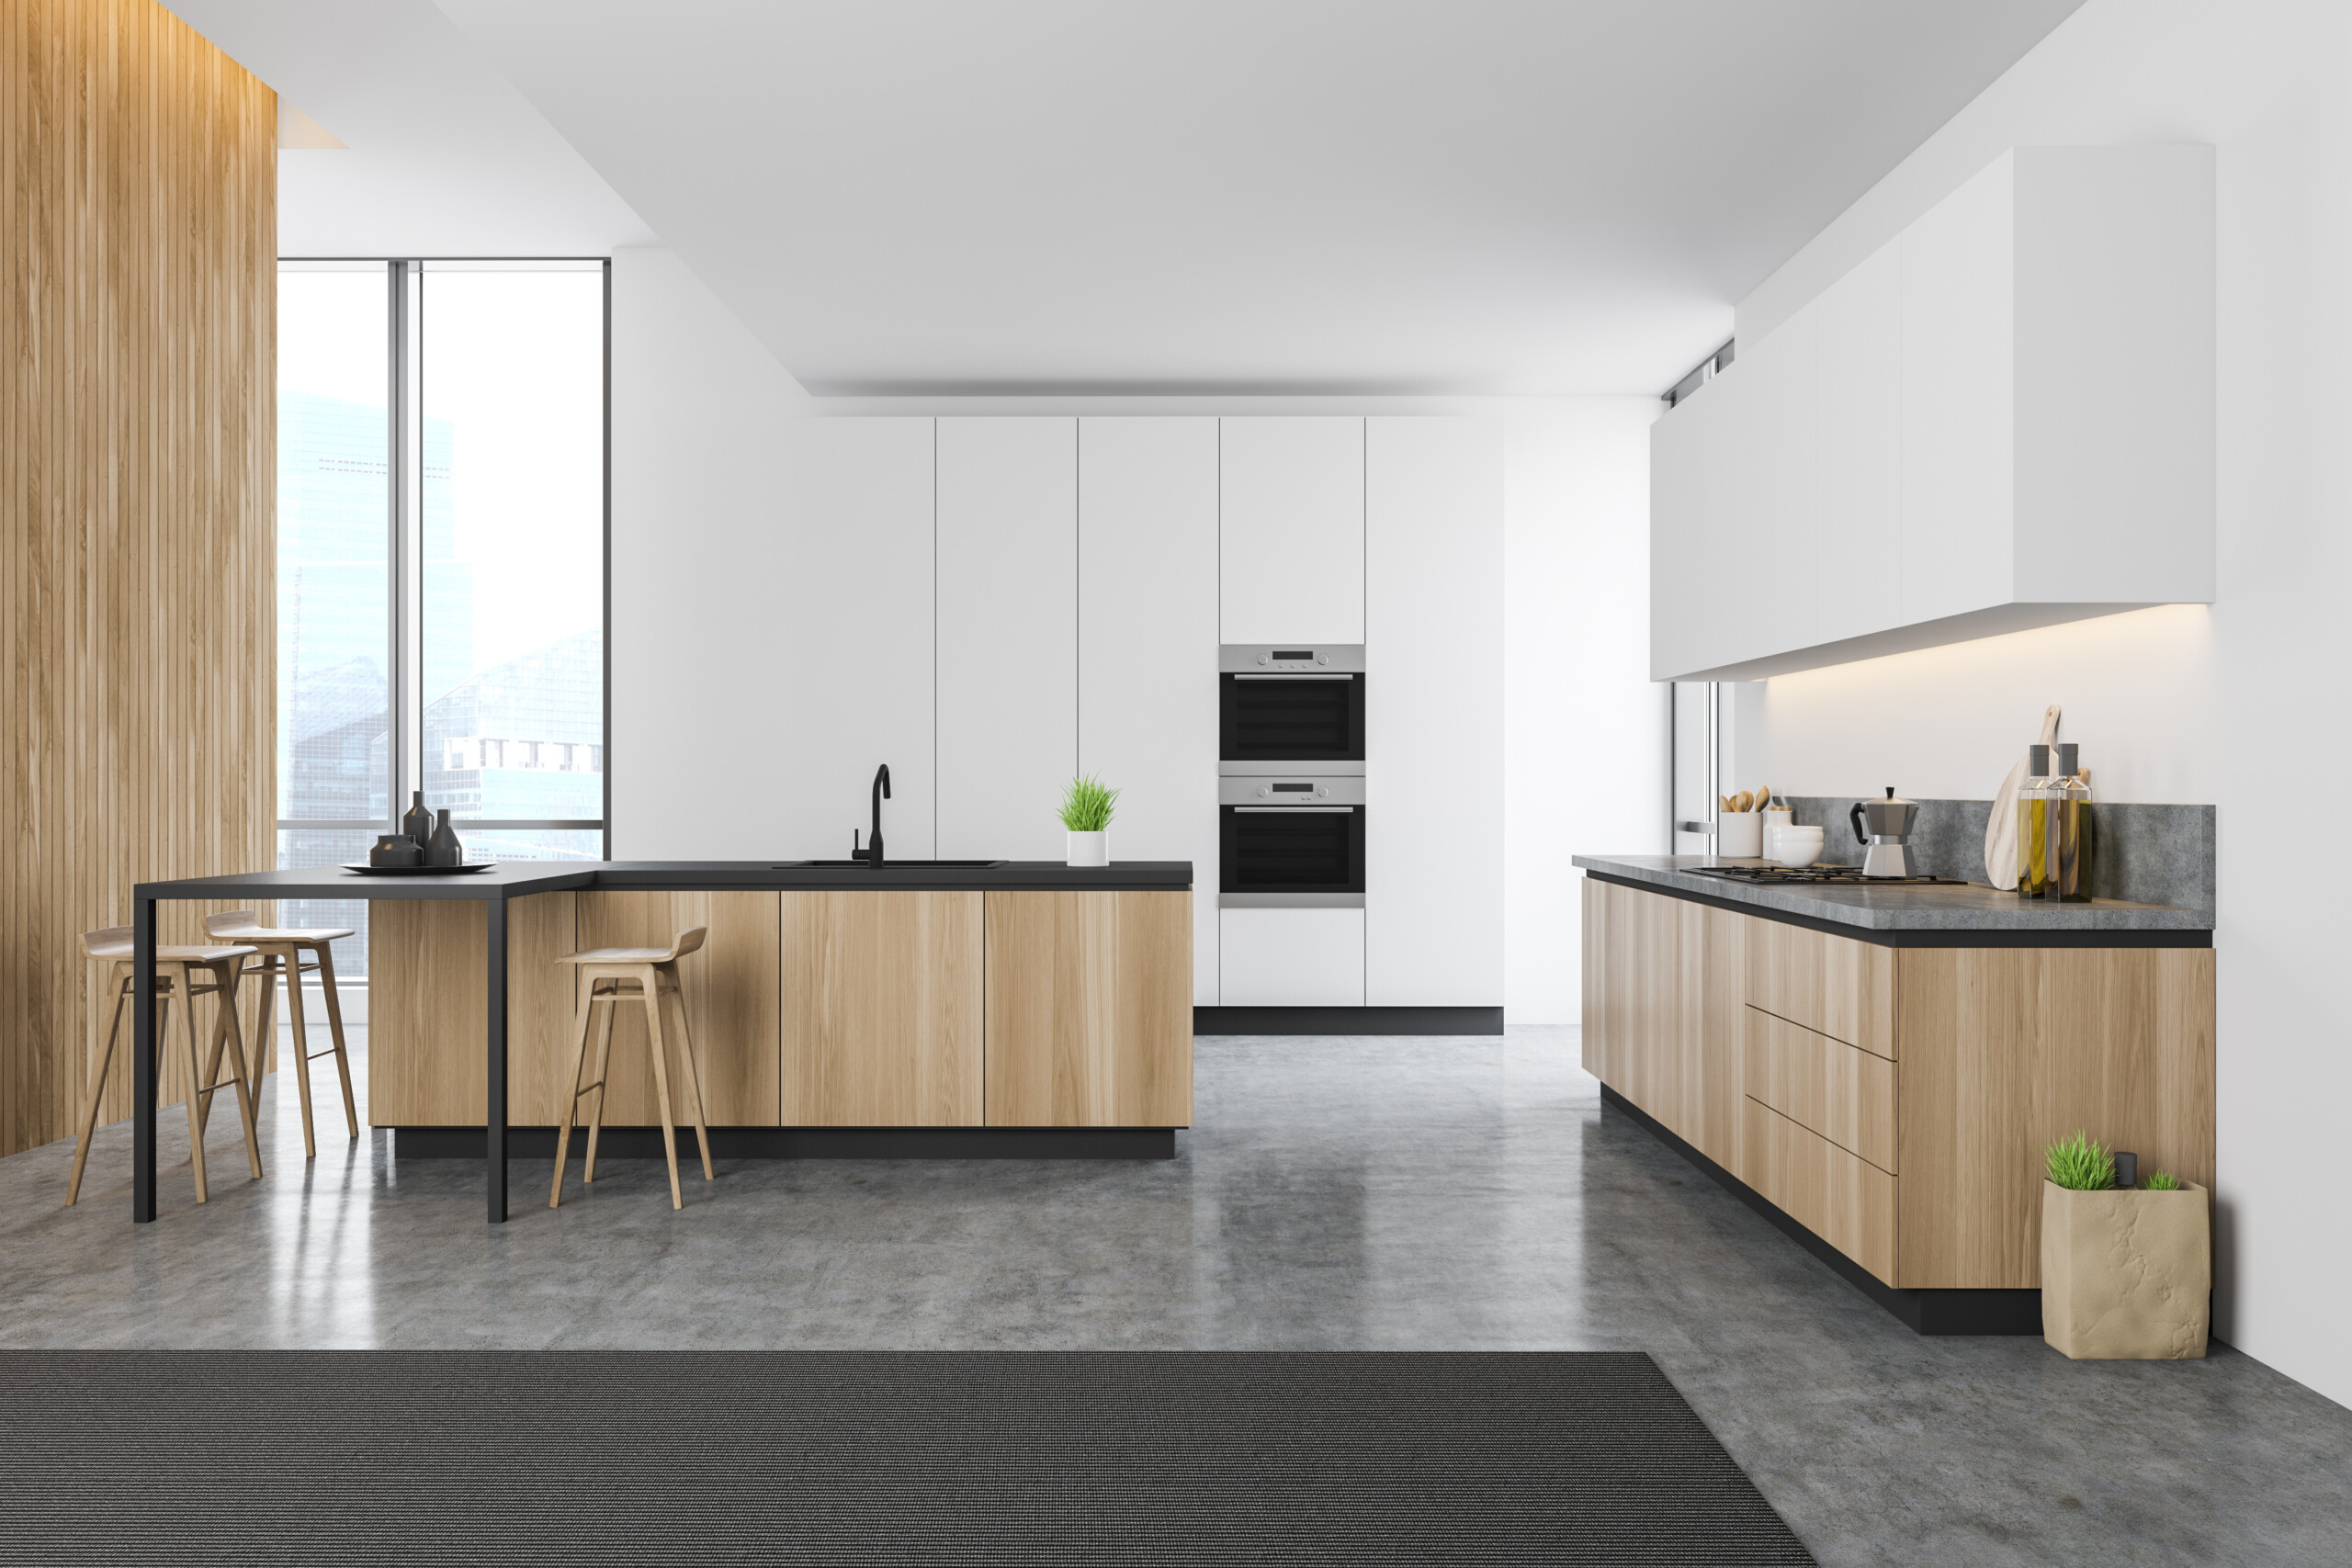 kitchen floor design market size